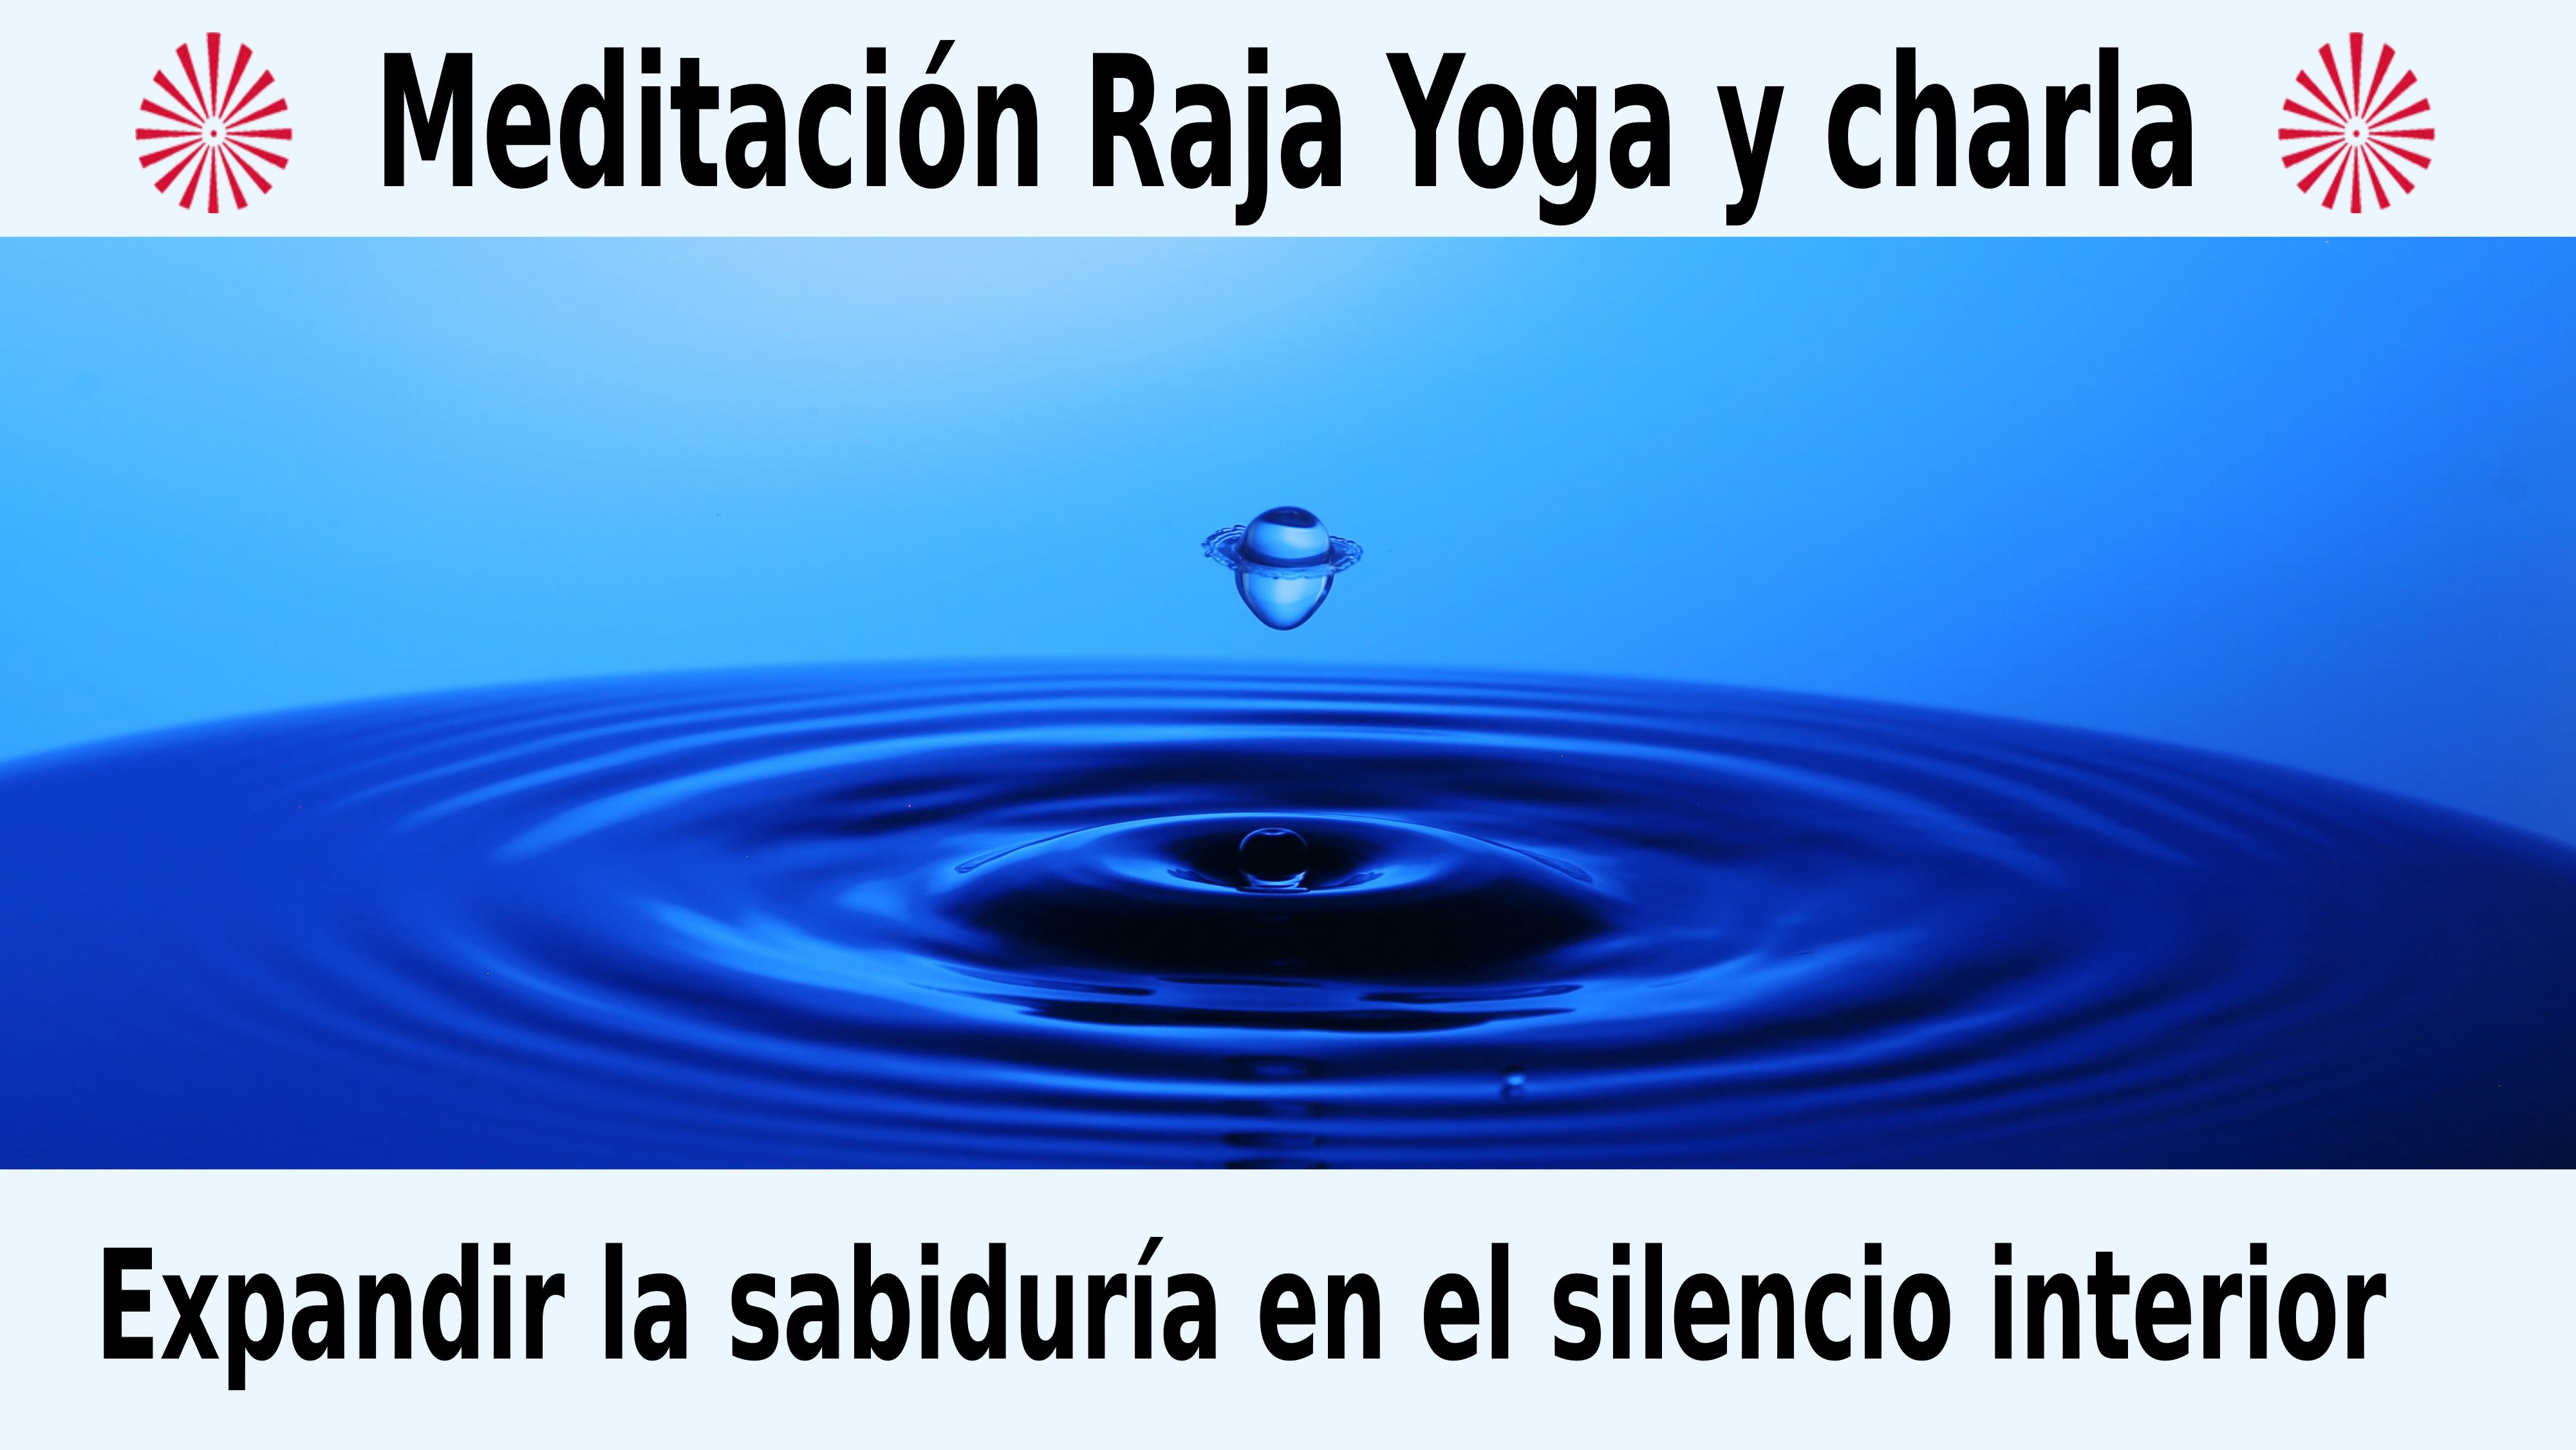 Meditación Raja Yoga y charla: Expandir la sabiduría en el silencio interior (22 Diciembre 2020) On-line desde Madrid